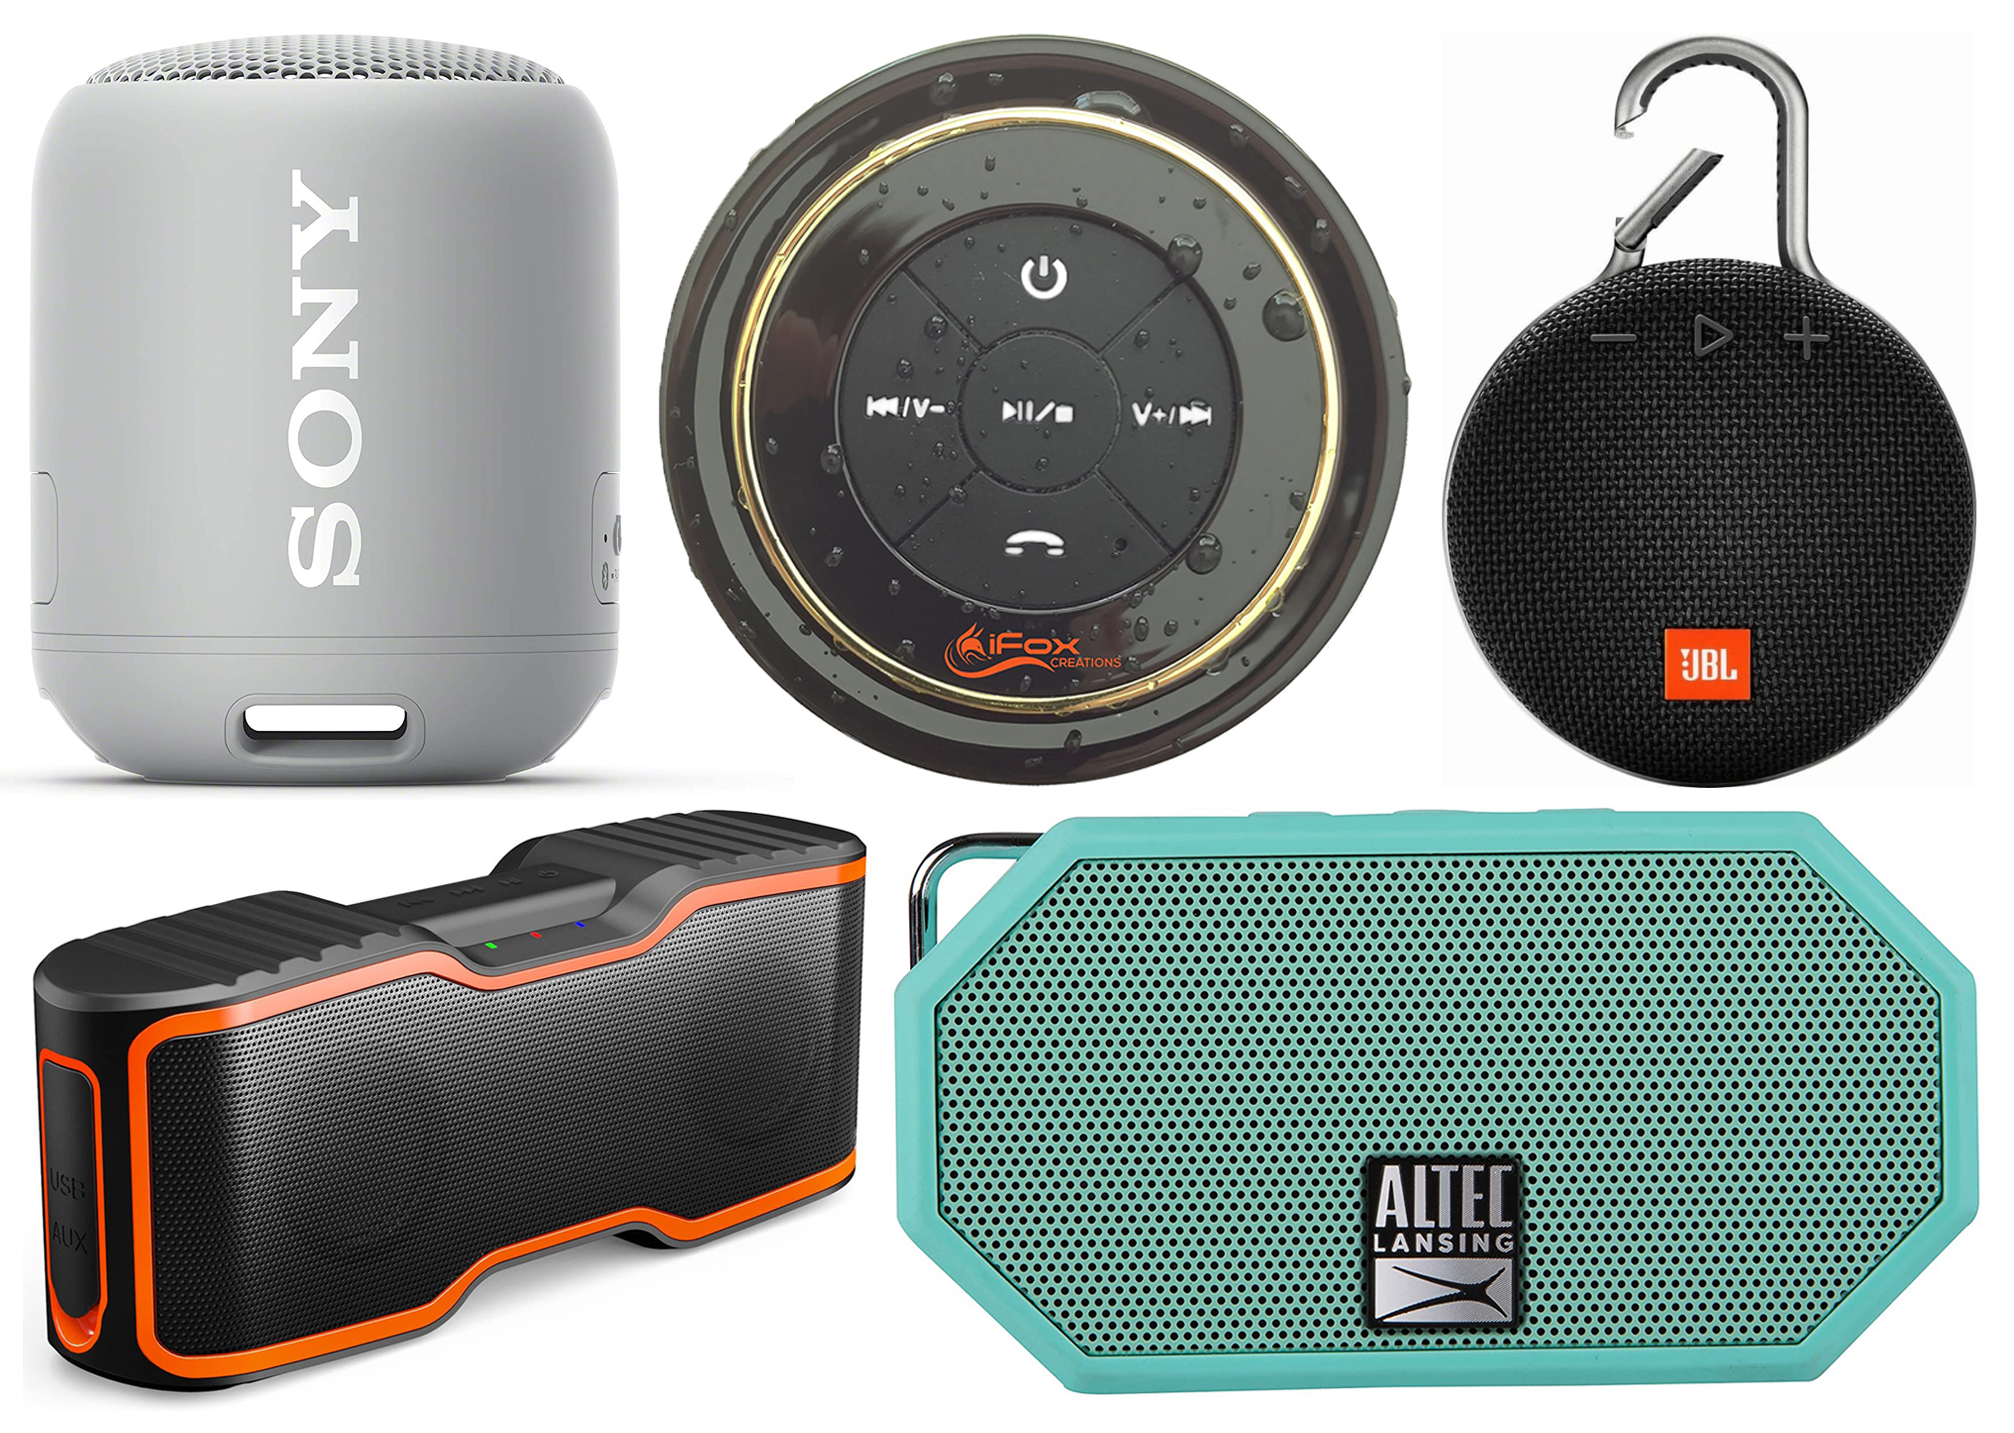 Top 5 waterproof portable bluetooth speakers under $50